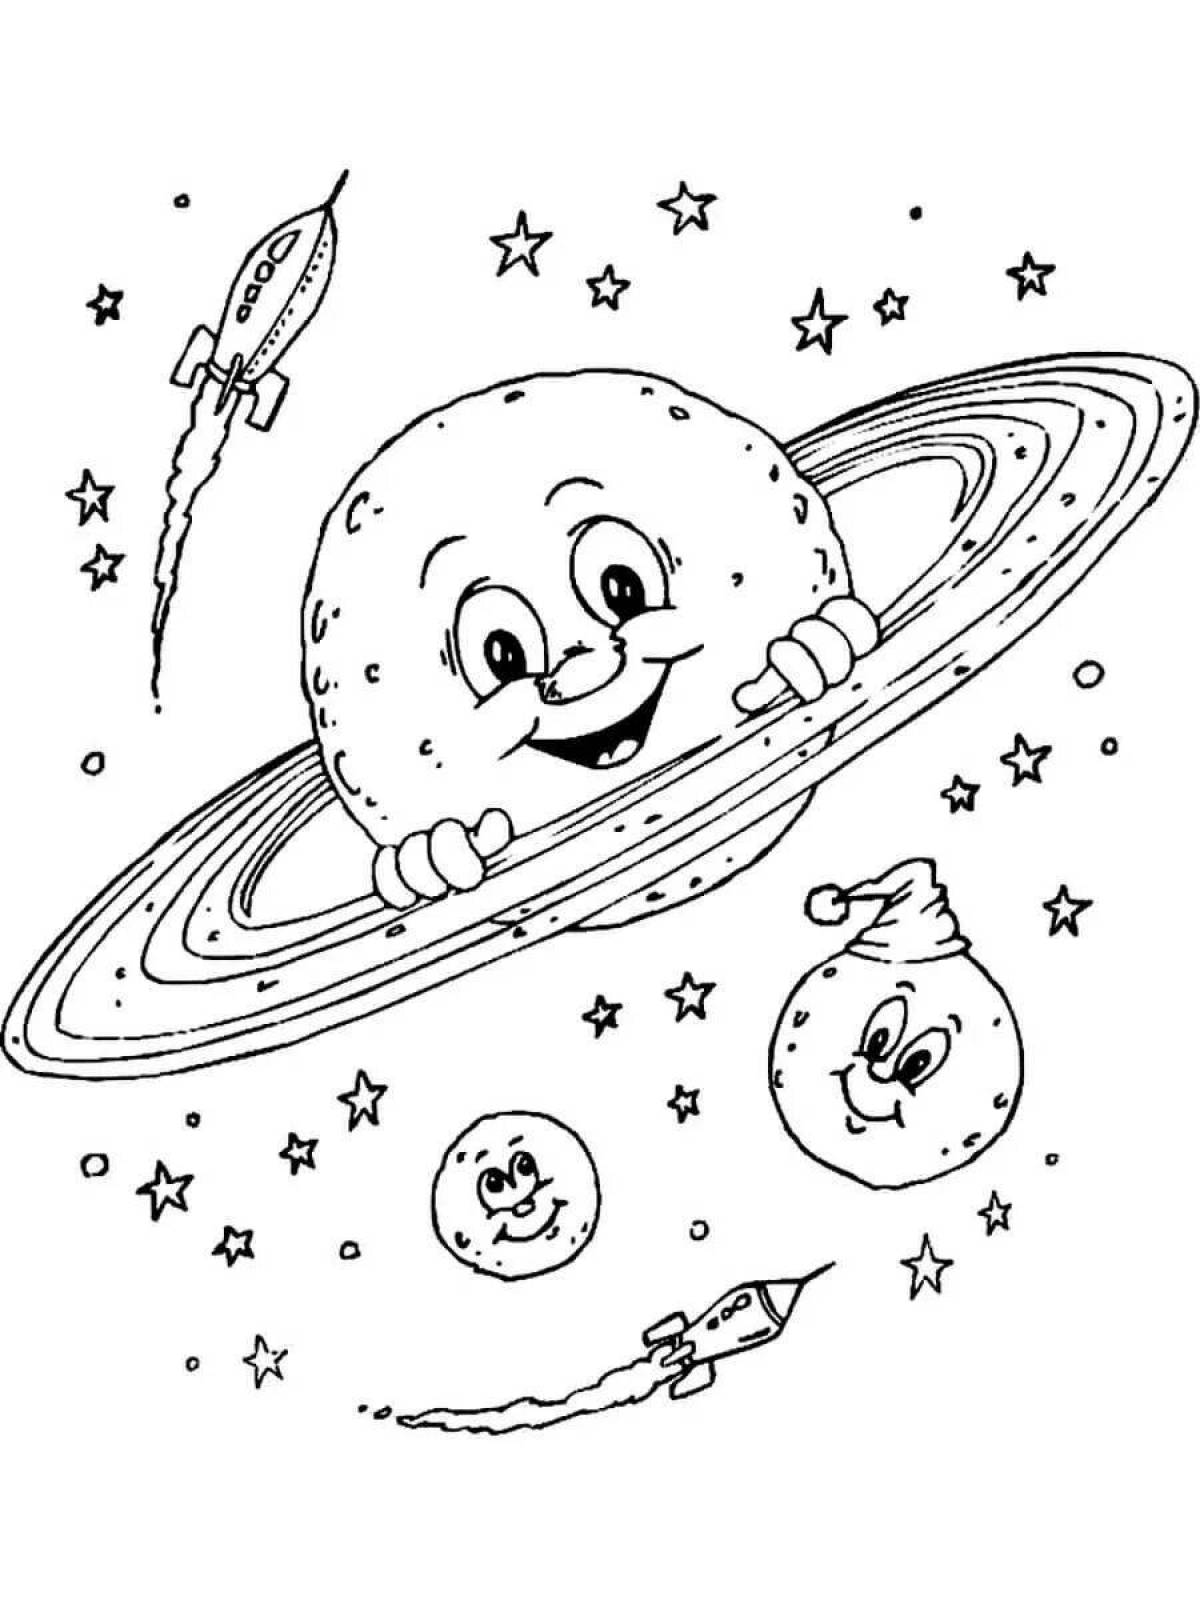 Раскраски к дню космонавтики для детей распечатать. Космос раскраска для детей. Раскраска. В космосе. Раскраска космос и планеты для детей. Раскраска на тему космос для детей.